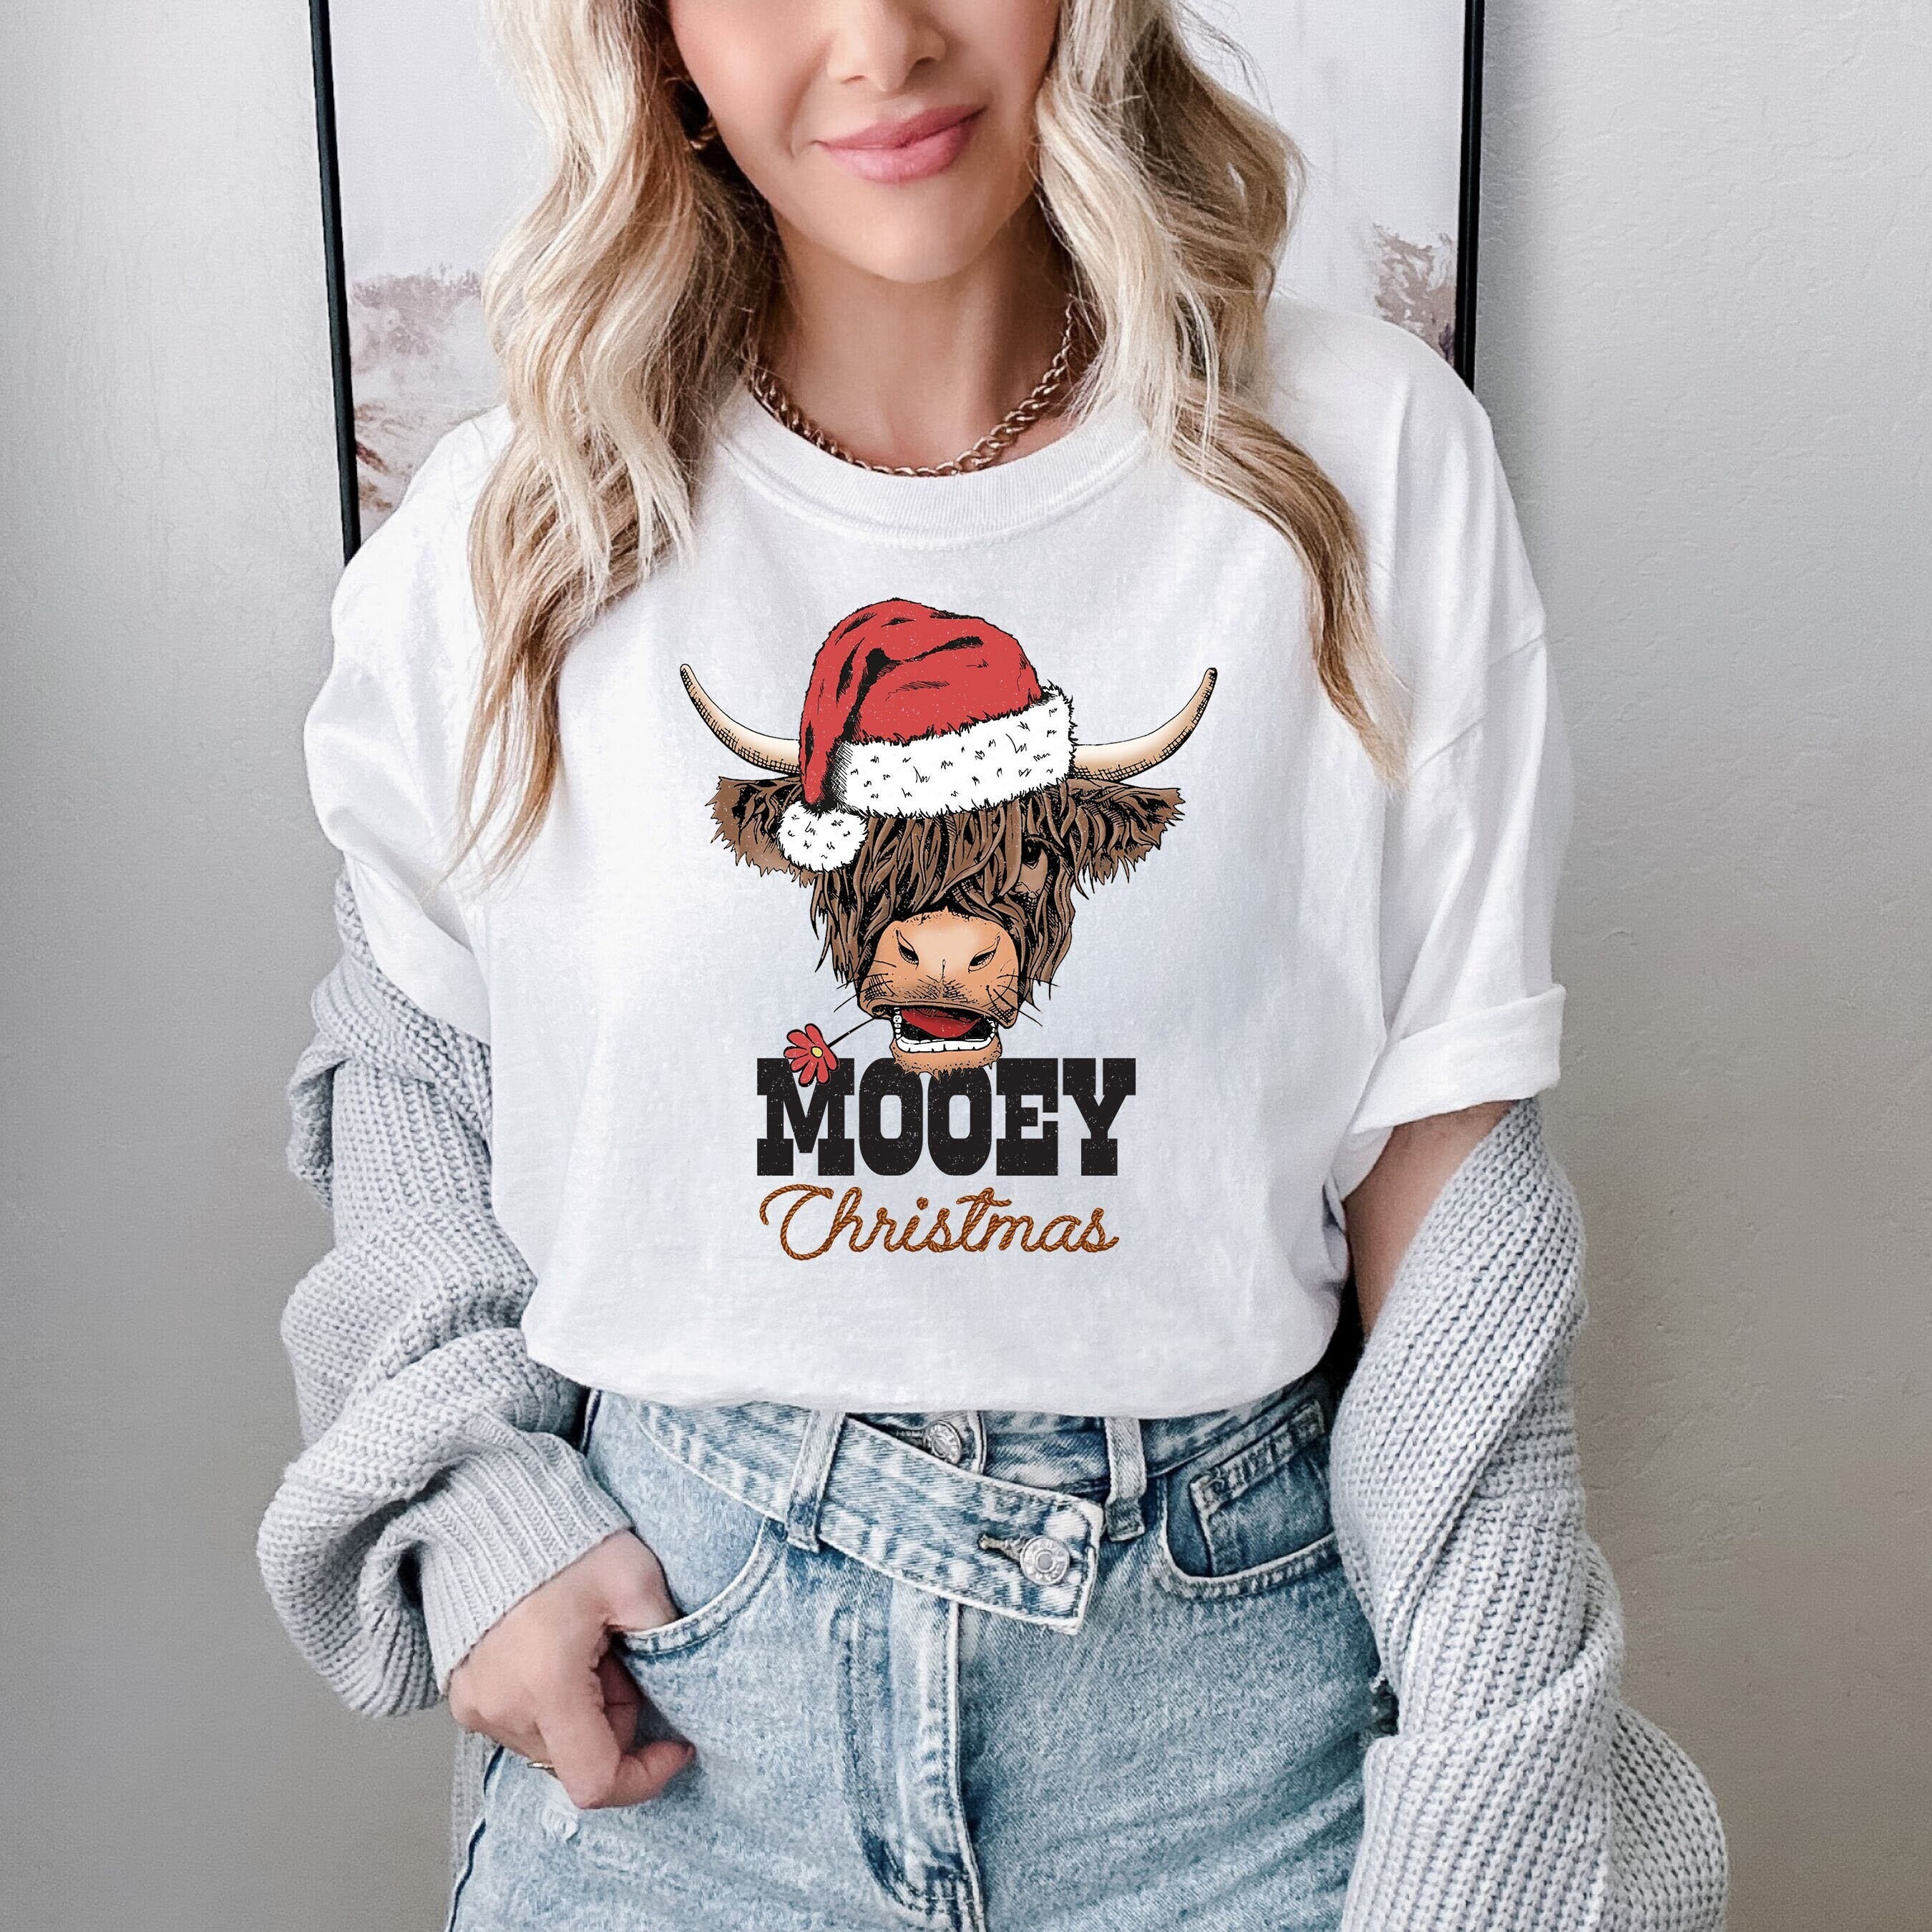 Mooey Christmas Sweatshirt, Western Christmas Sweater, Christmas Heifer Shirt, Xmas Cow Sweatshirt, Christmas Adult Crewneck Sweater